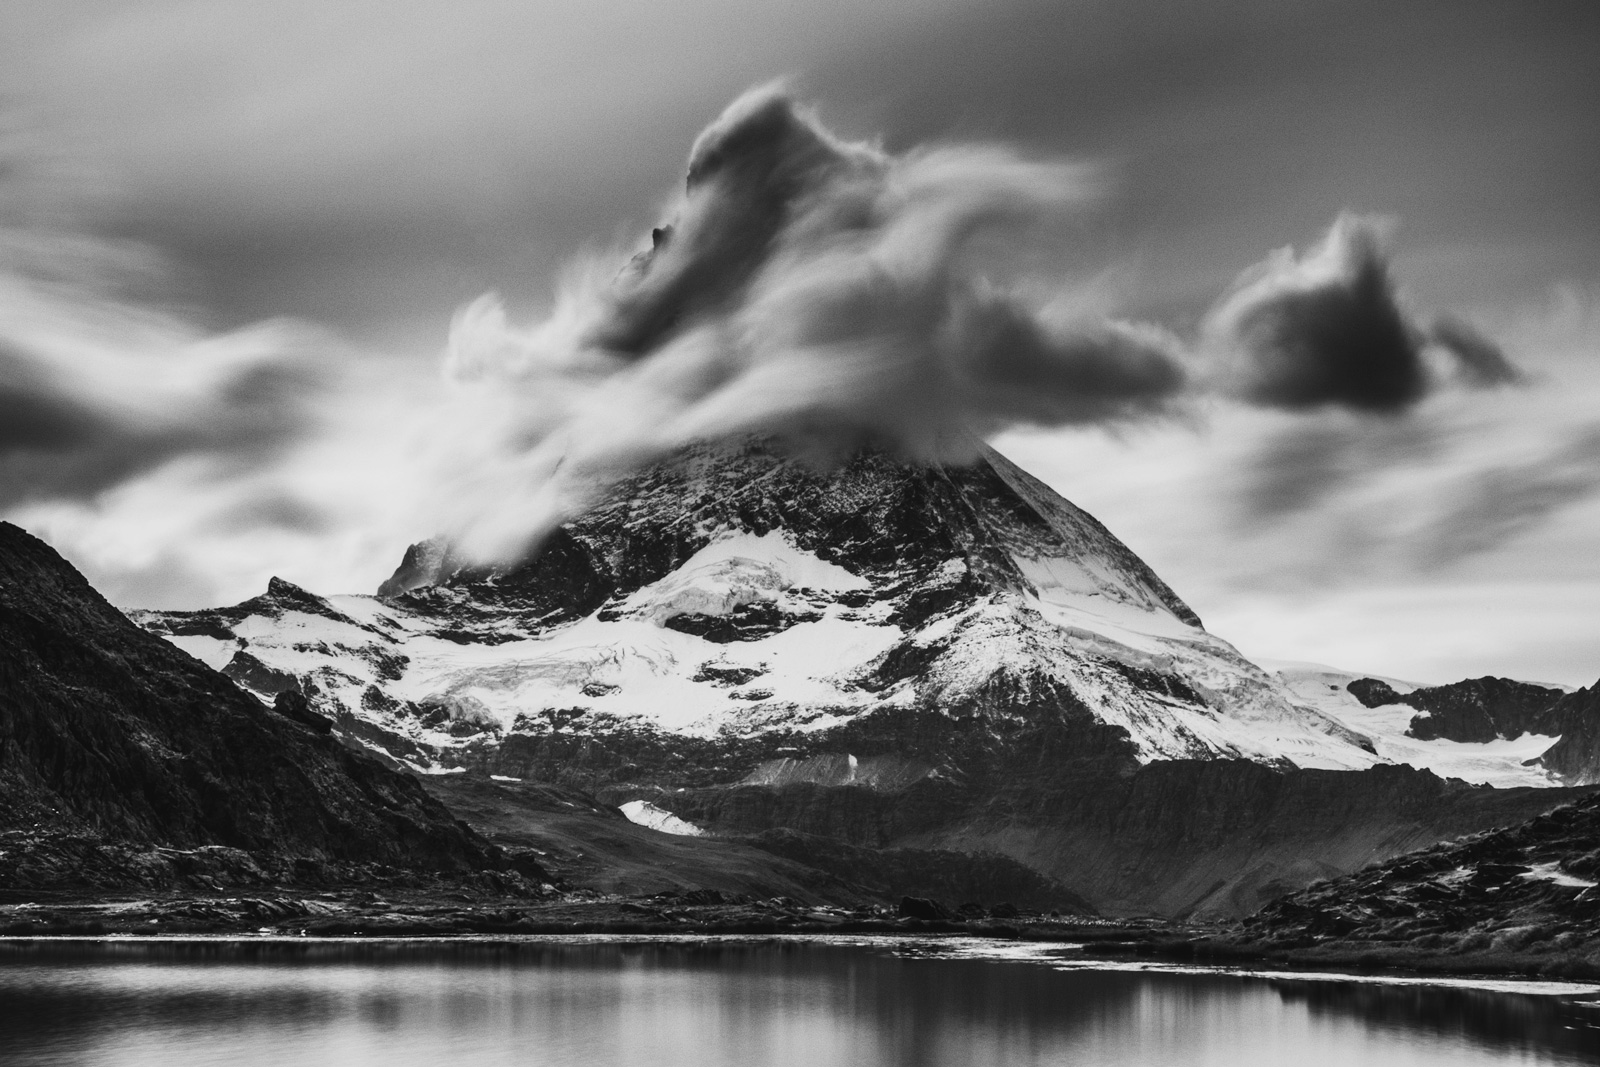 Matterhorn 4478 m n.m.